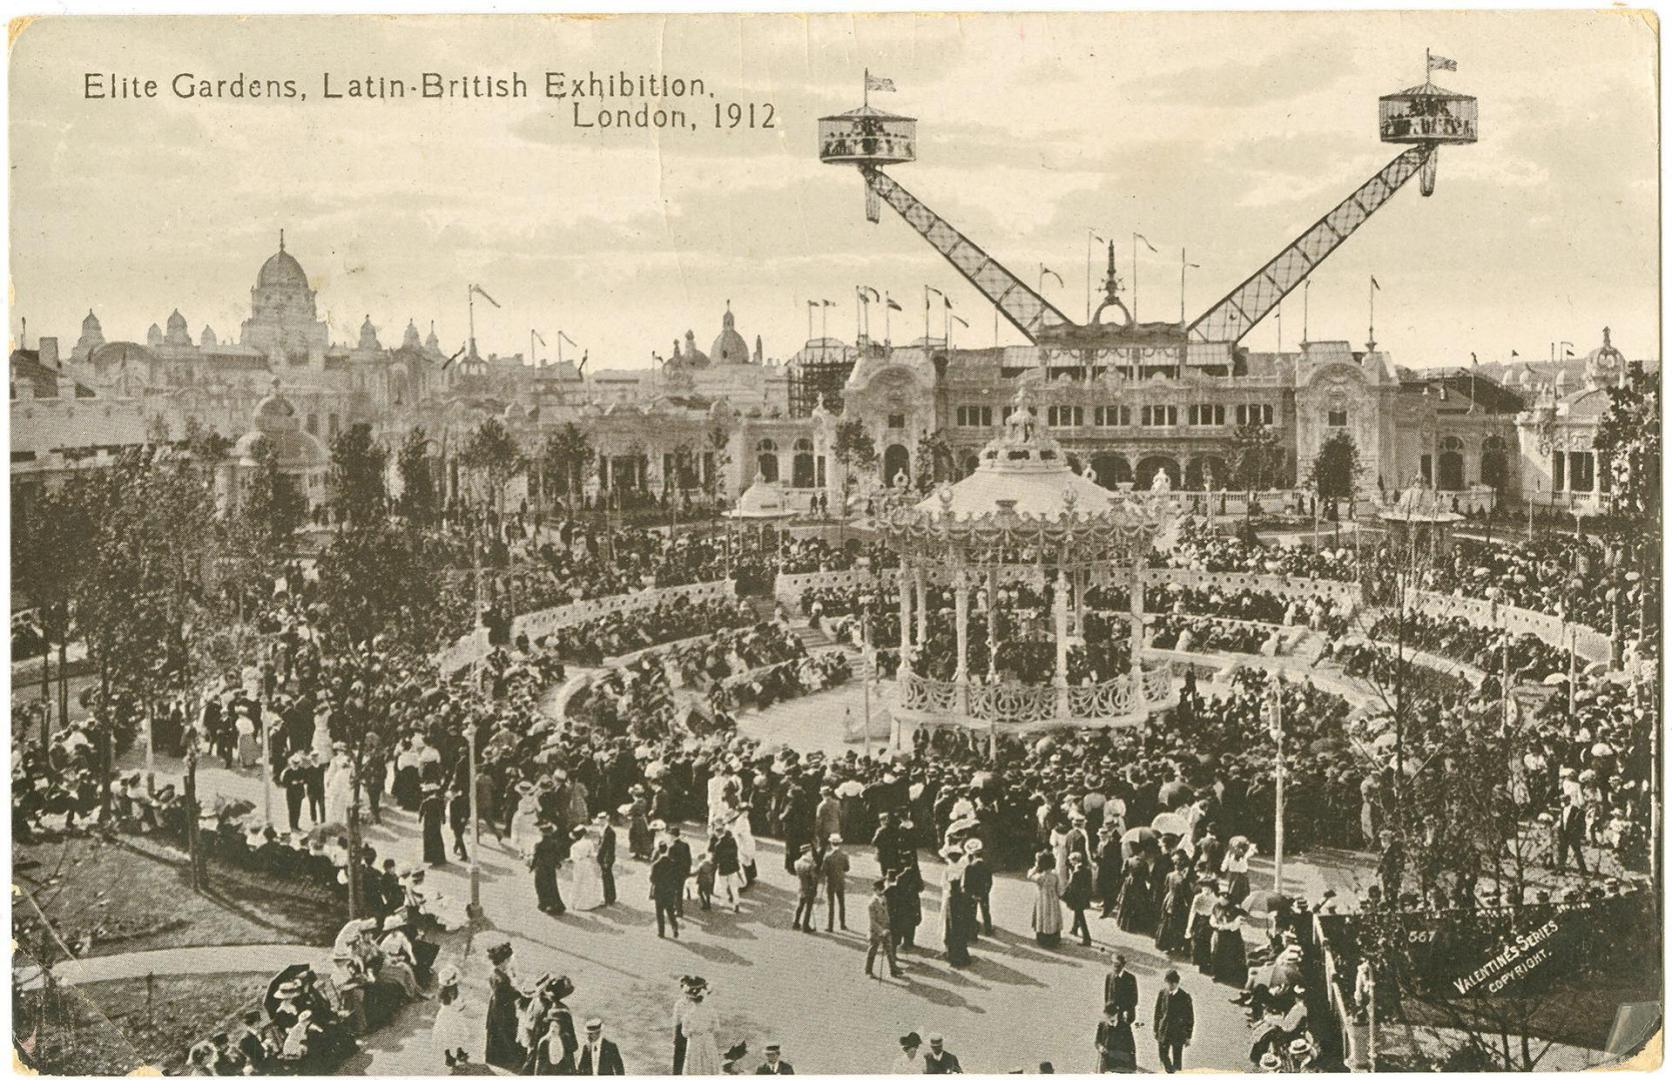 Elite Gardens, Latin-British Exhibition, London, 1912